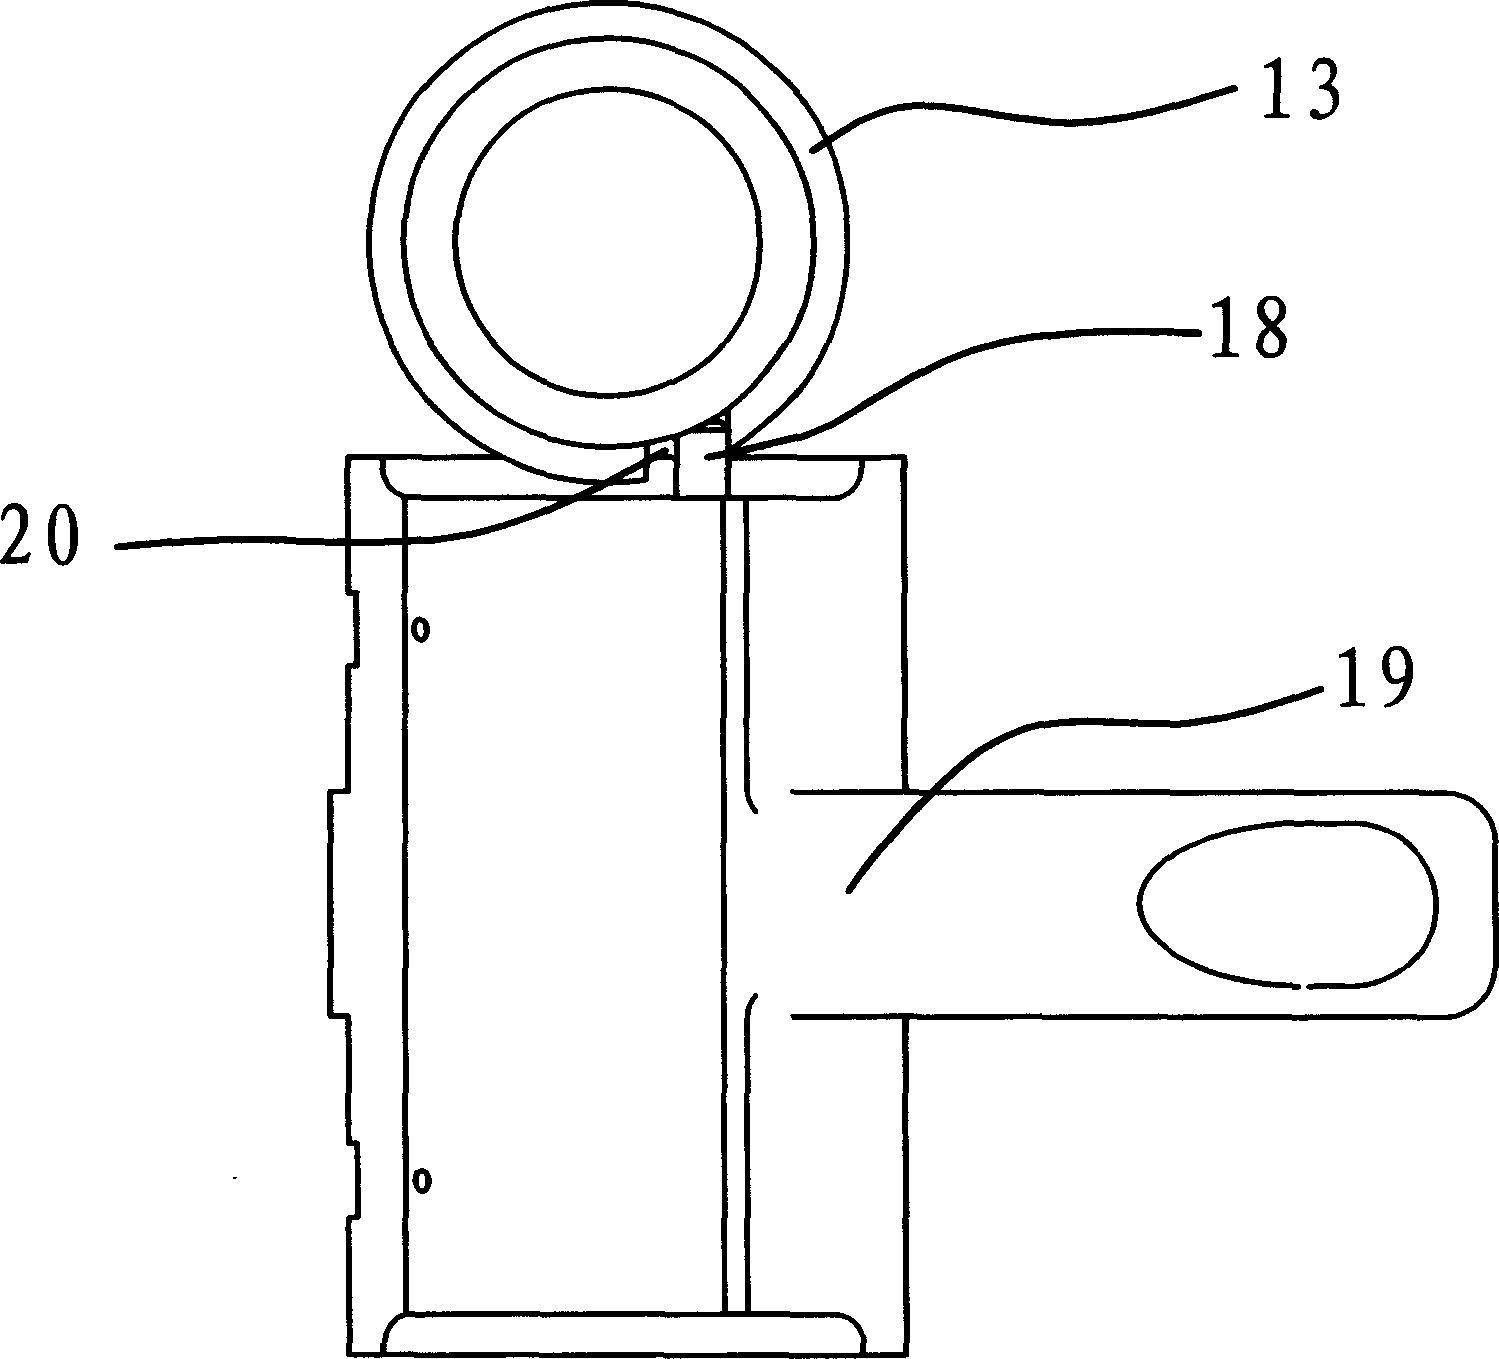 Disk brake slack self-adjusting mechanism